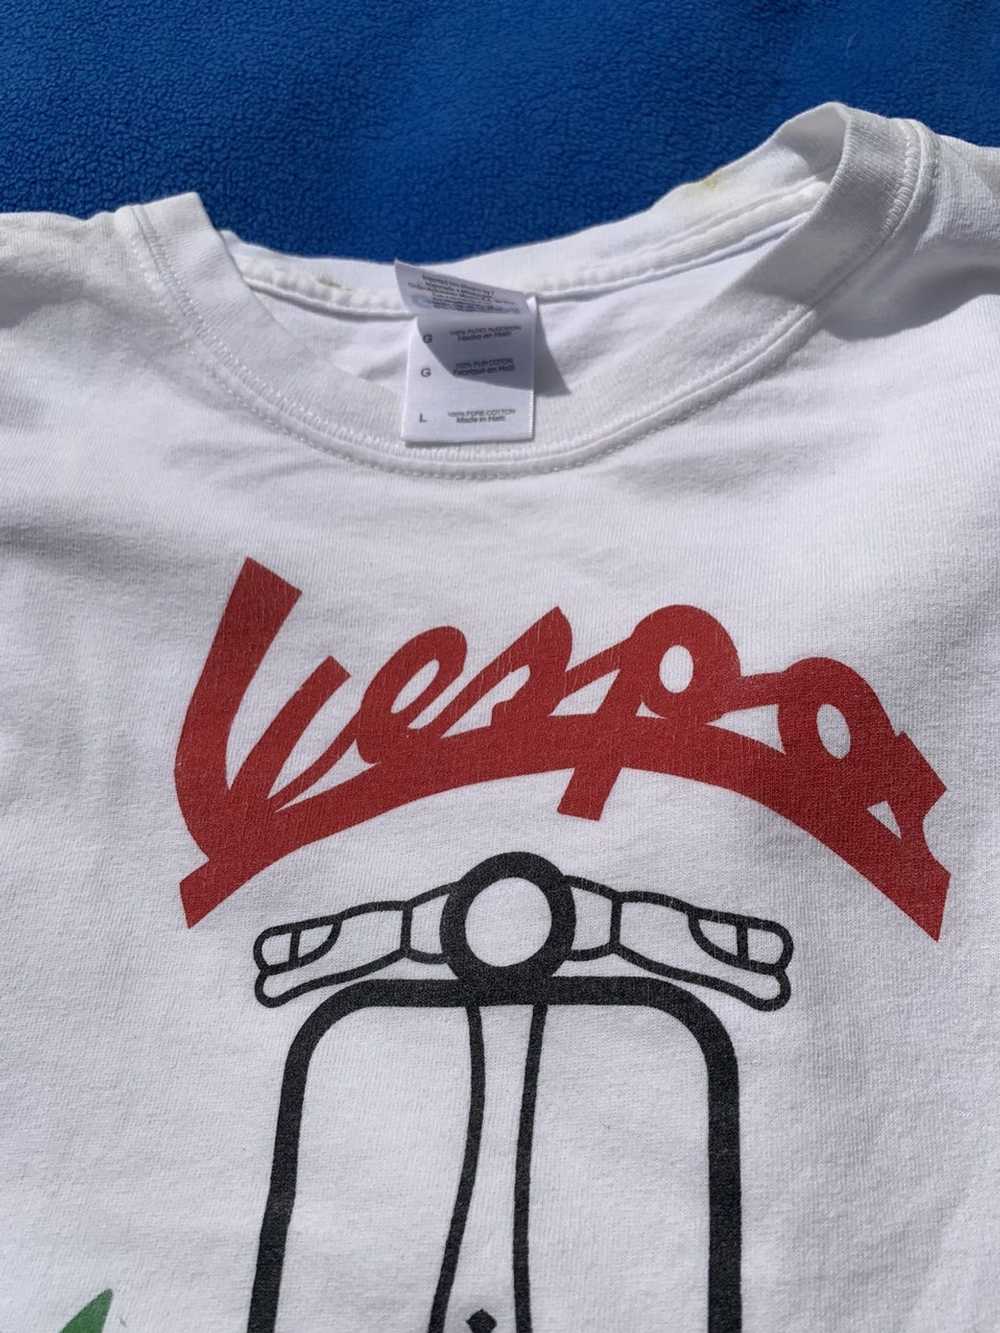 Vintage Vintage Vespa Tshirt - image 4